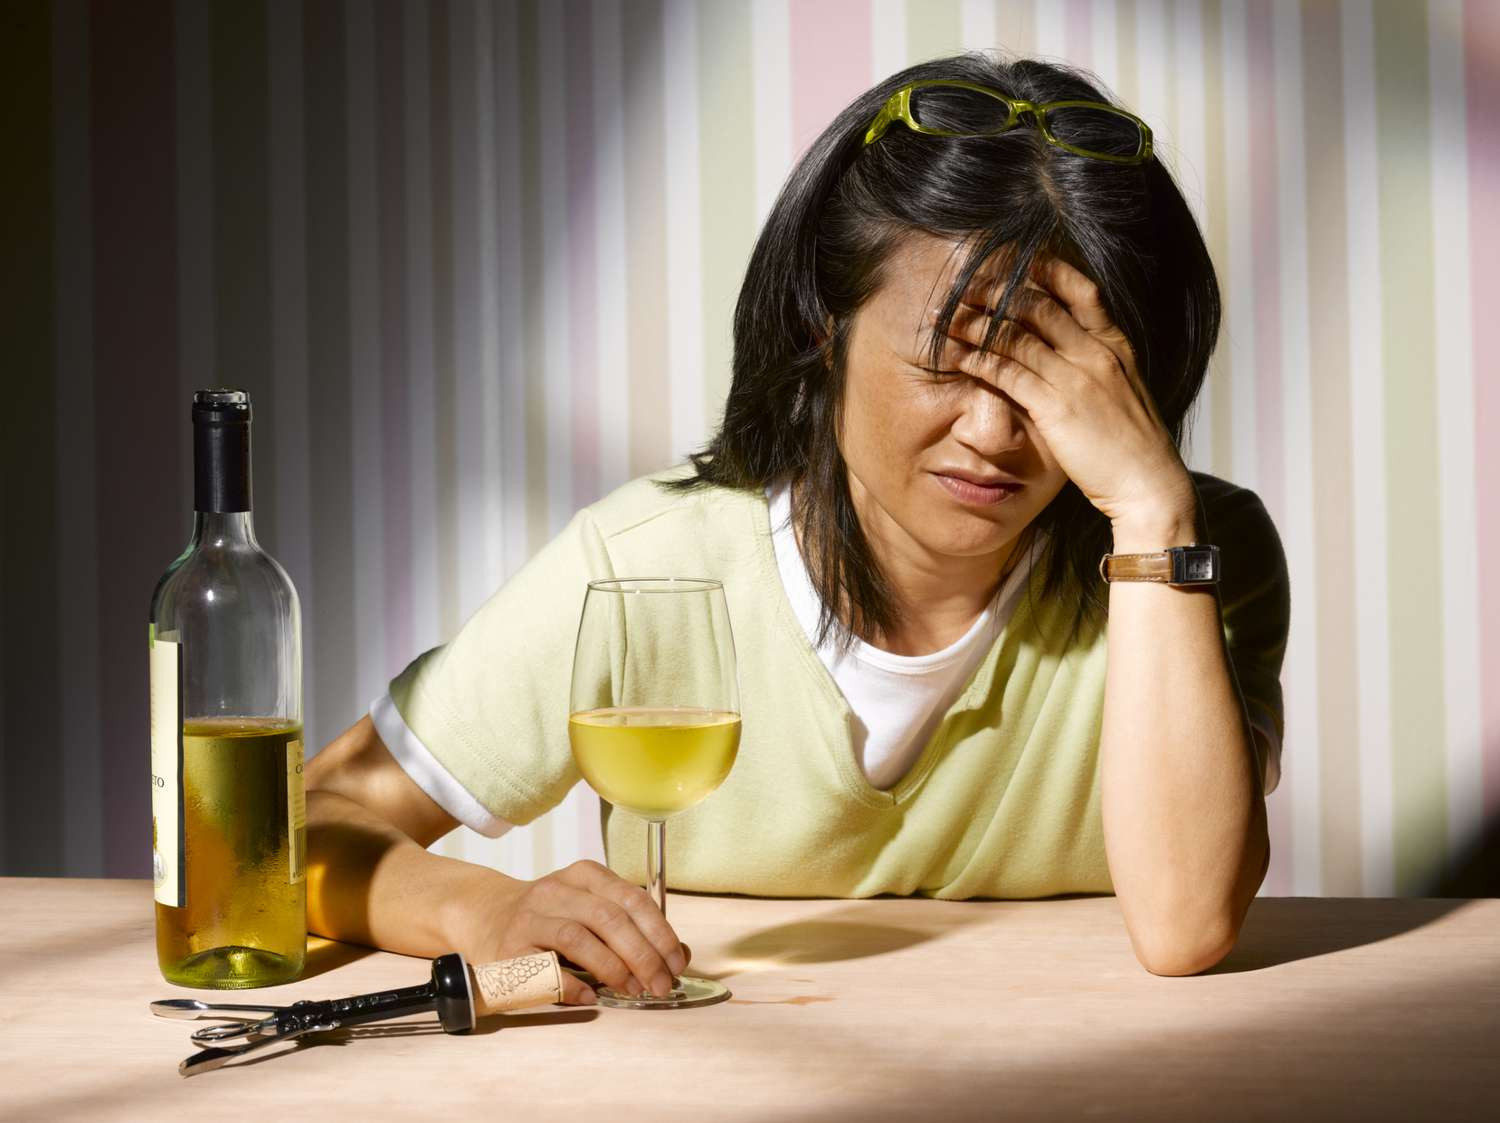 Rượu có thể khiến hoạt động của não trở nên bất thường, dẫn đến cơ thể mệt mỏi